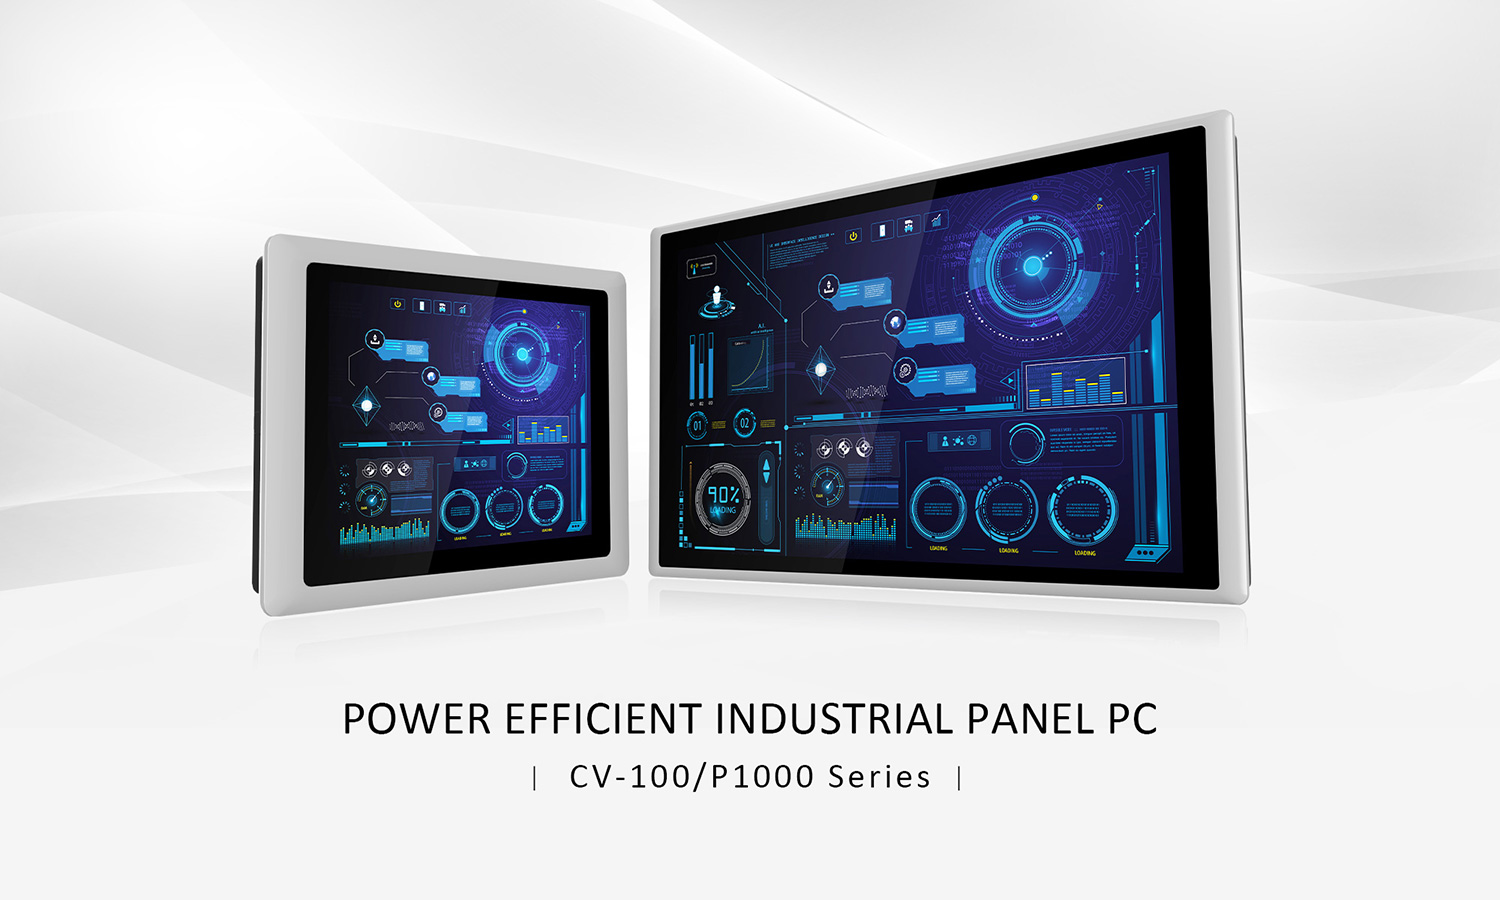 Cincoze power efficient industrial panel pc - CV-100/P1000 Series